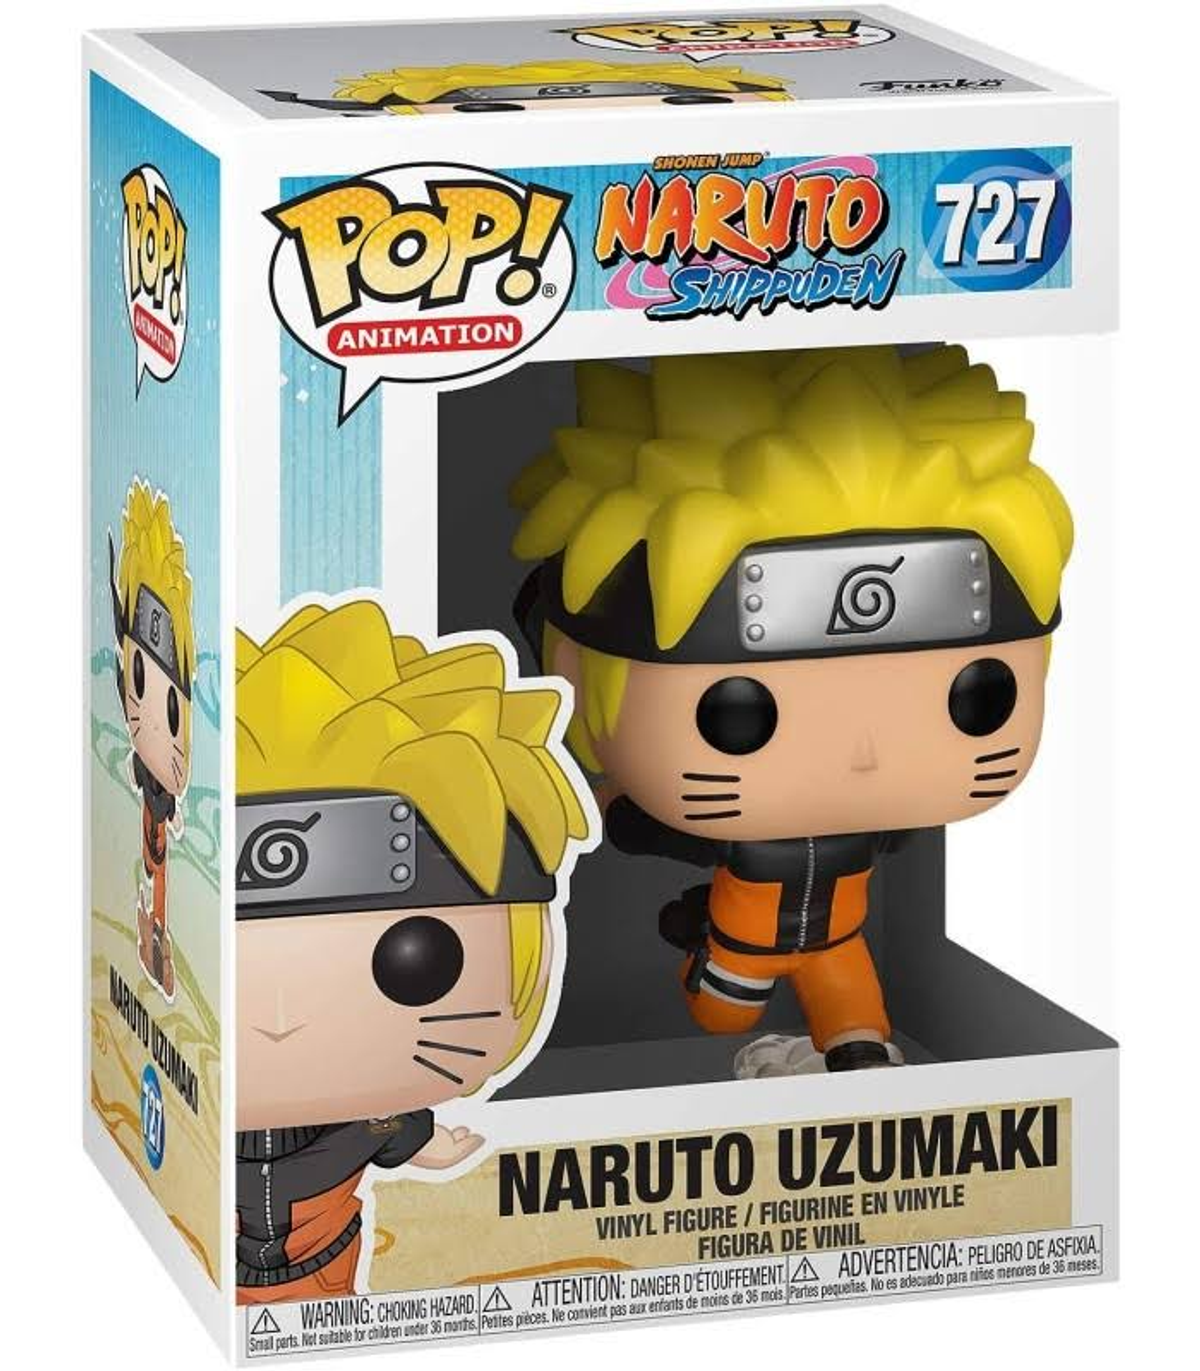 - Naruto Naruto - Uzumaki POP